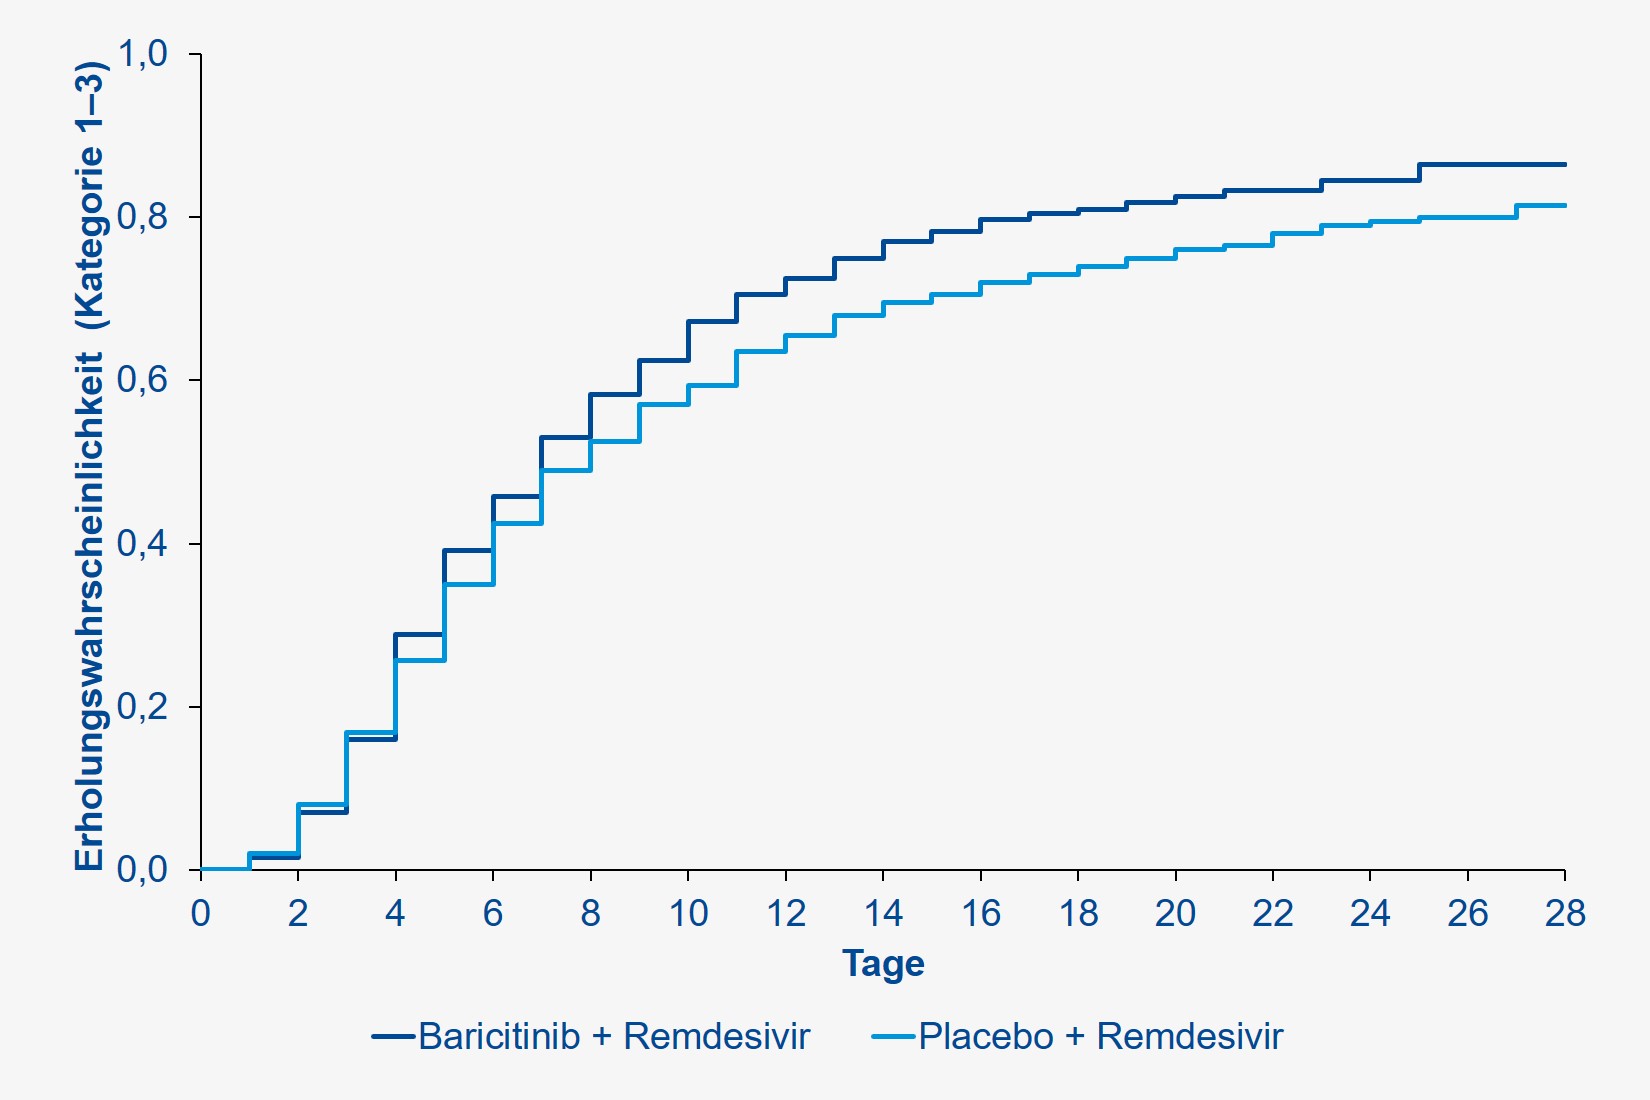 <p>Wahrscheinlichkeit einer Erholung (Kategorie 1 bis 3 auf einer 8-Kategorien-Outcome-Skala) unter Baricitinib plus Remdesivir im Vergleich zu Remdesivir plus Placebo. Nachberechnet nach <a href="https://www.nejm.org/doi/full/10.1056/NEJMoa2031994">The New England Journal of Medicine</a>.</p>